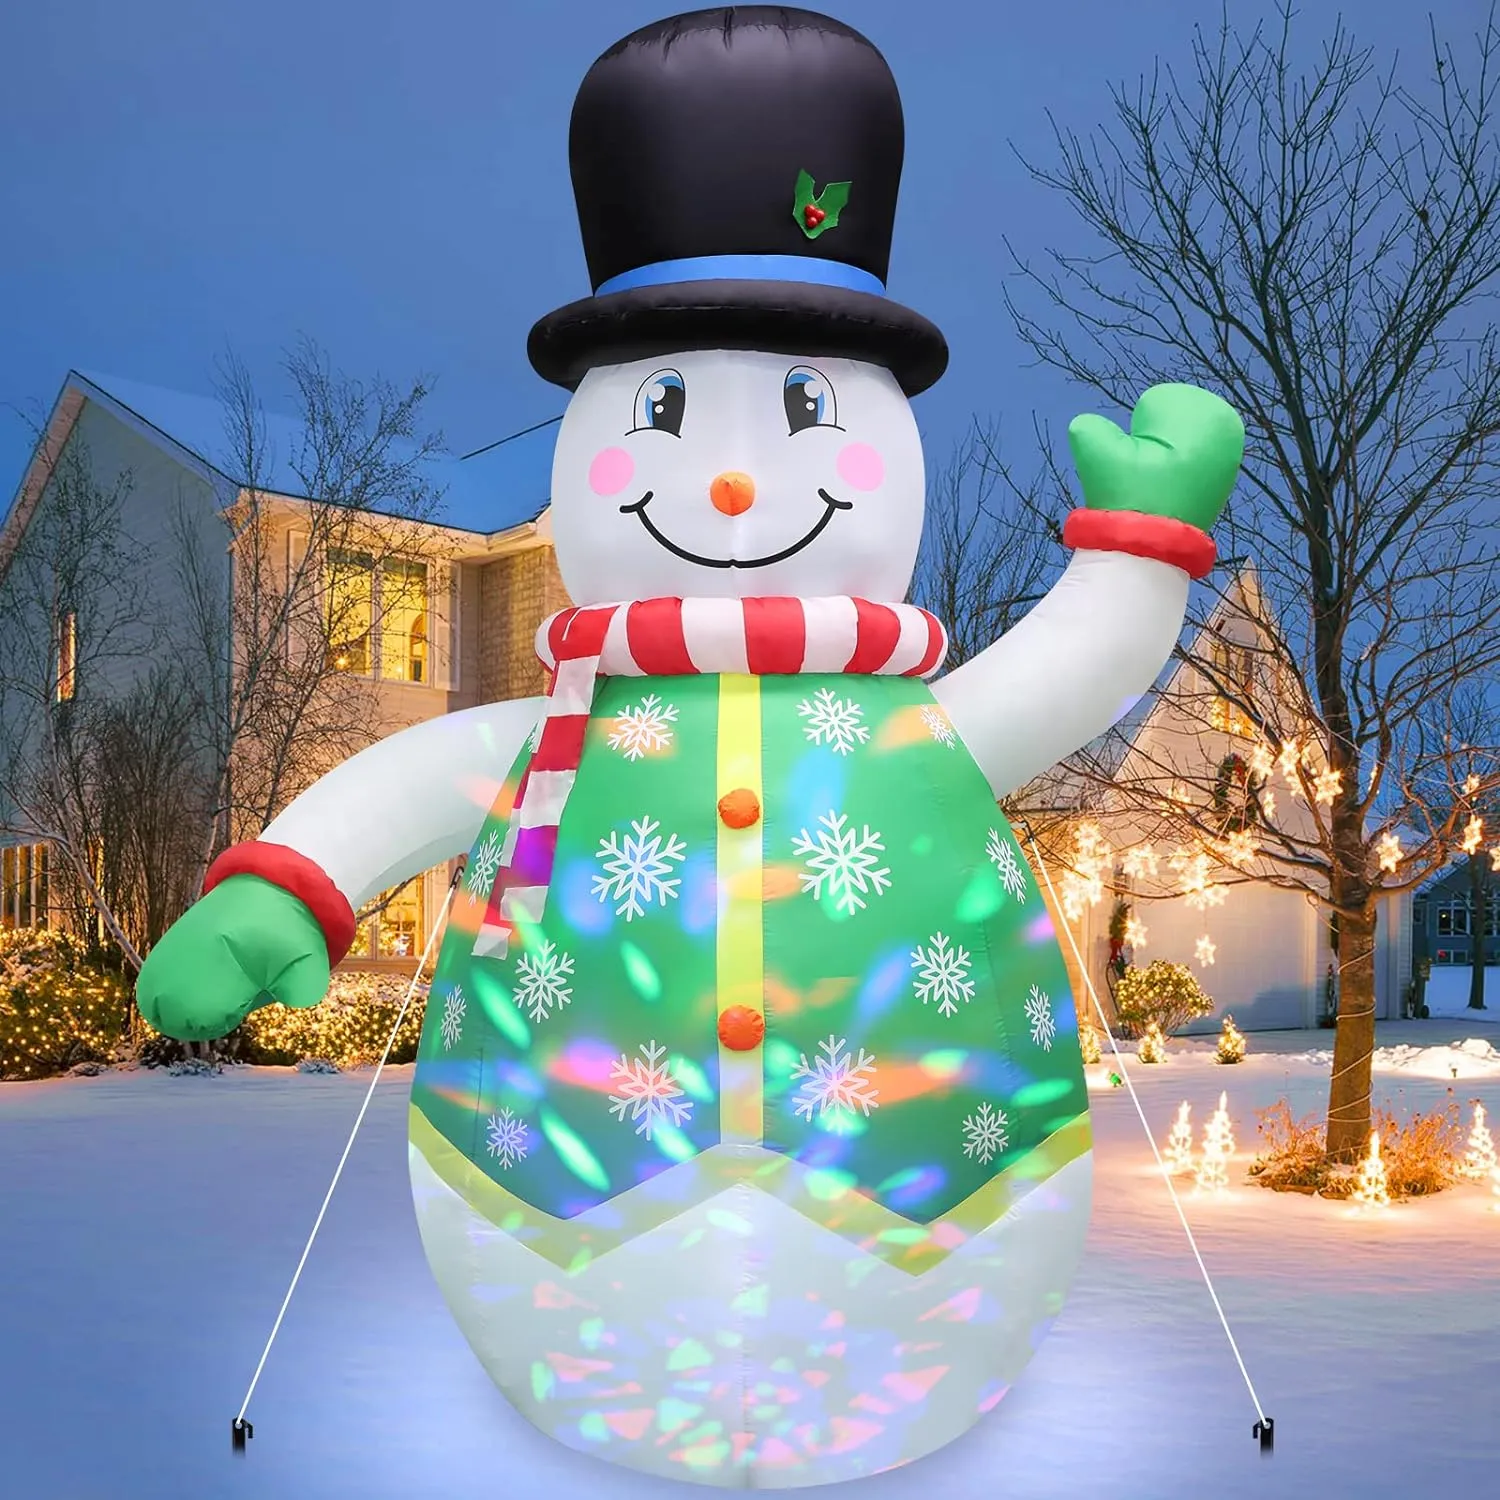 Infláveis de Natal Decorações ao ar livre 8 pés, decorações de quintal inflável Boneco de neve de Natal inflável com luzes LED coloridas giratórias para decoração de varanda de festa de jardim de gramado